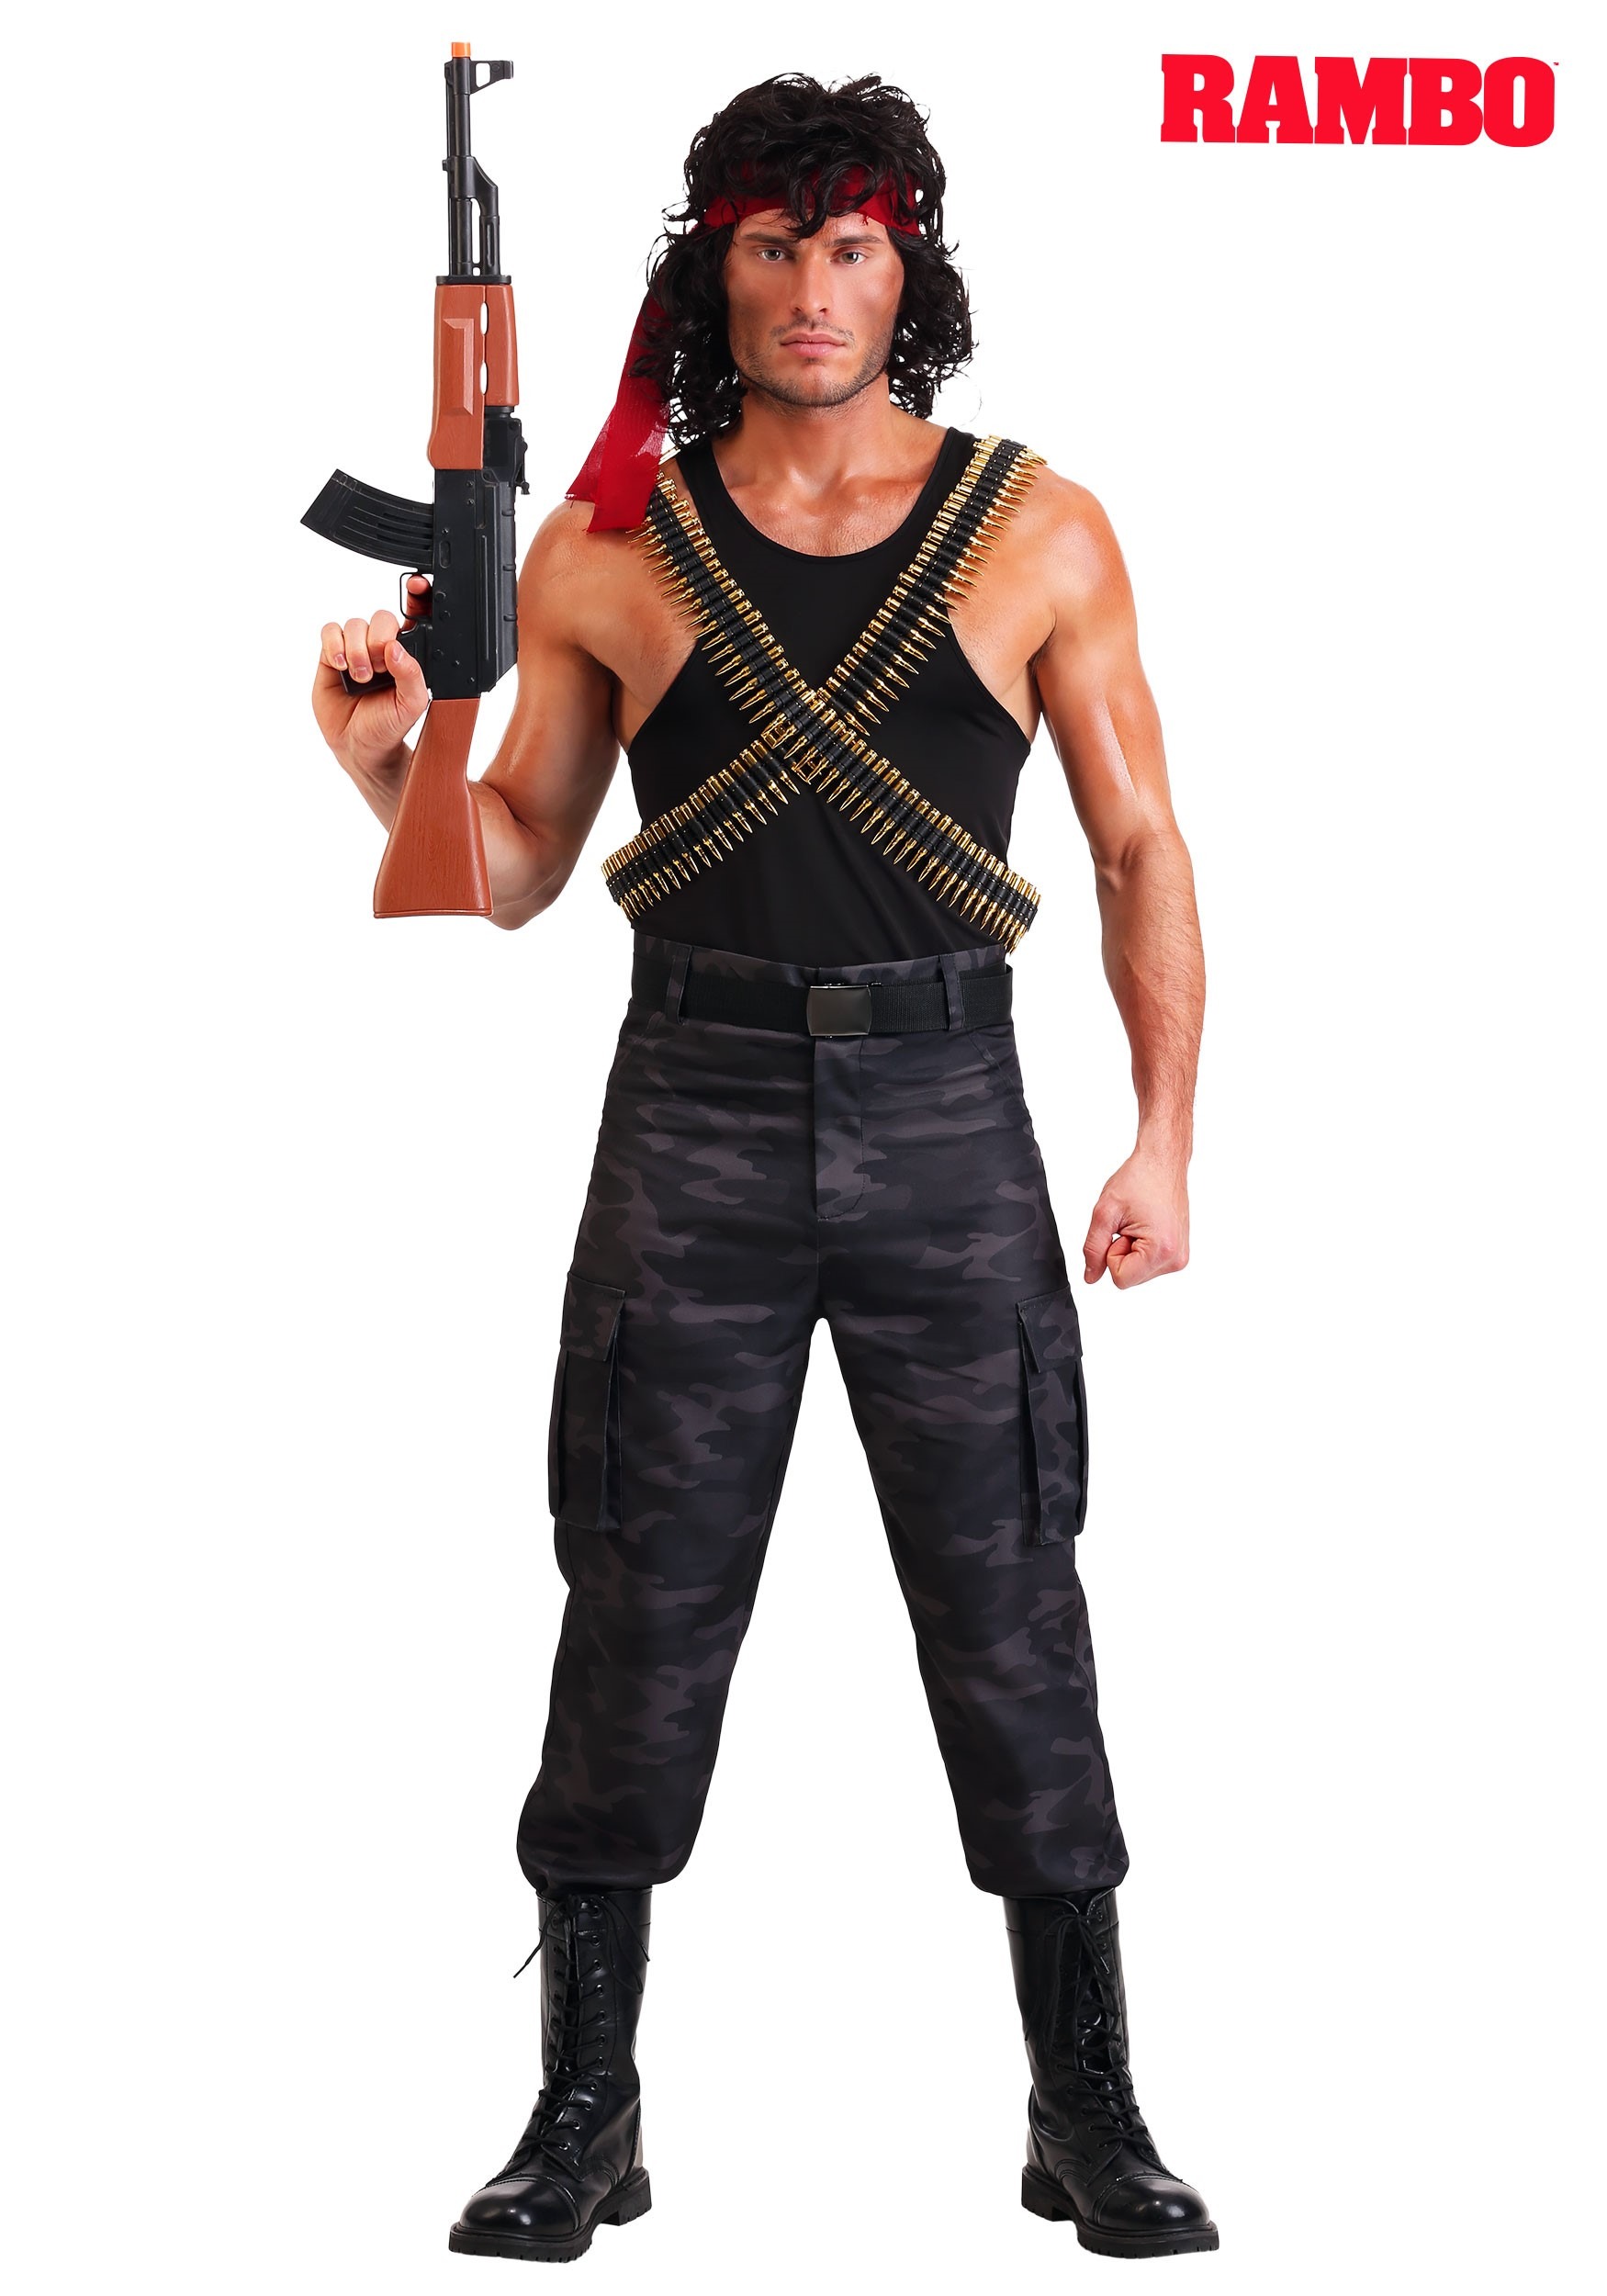 Rambo costume